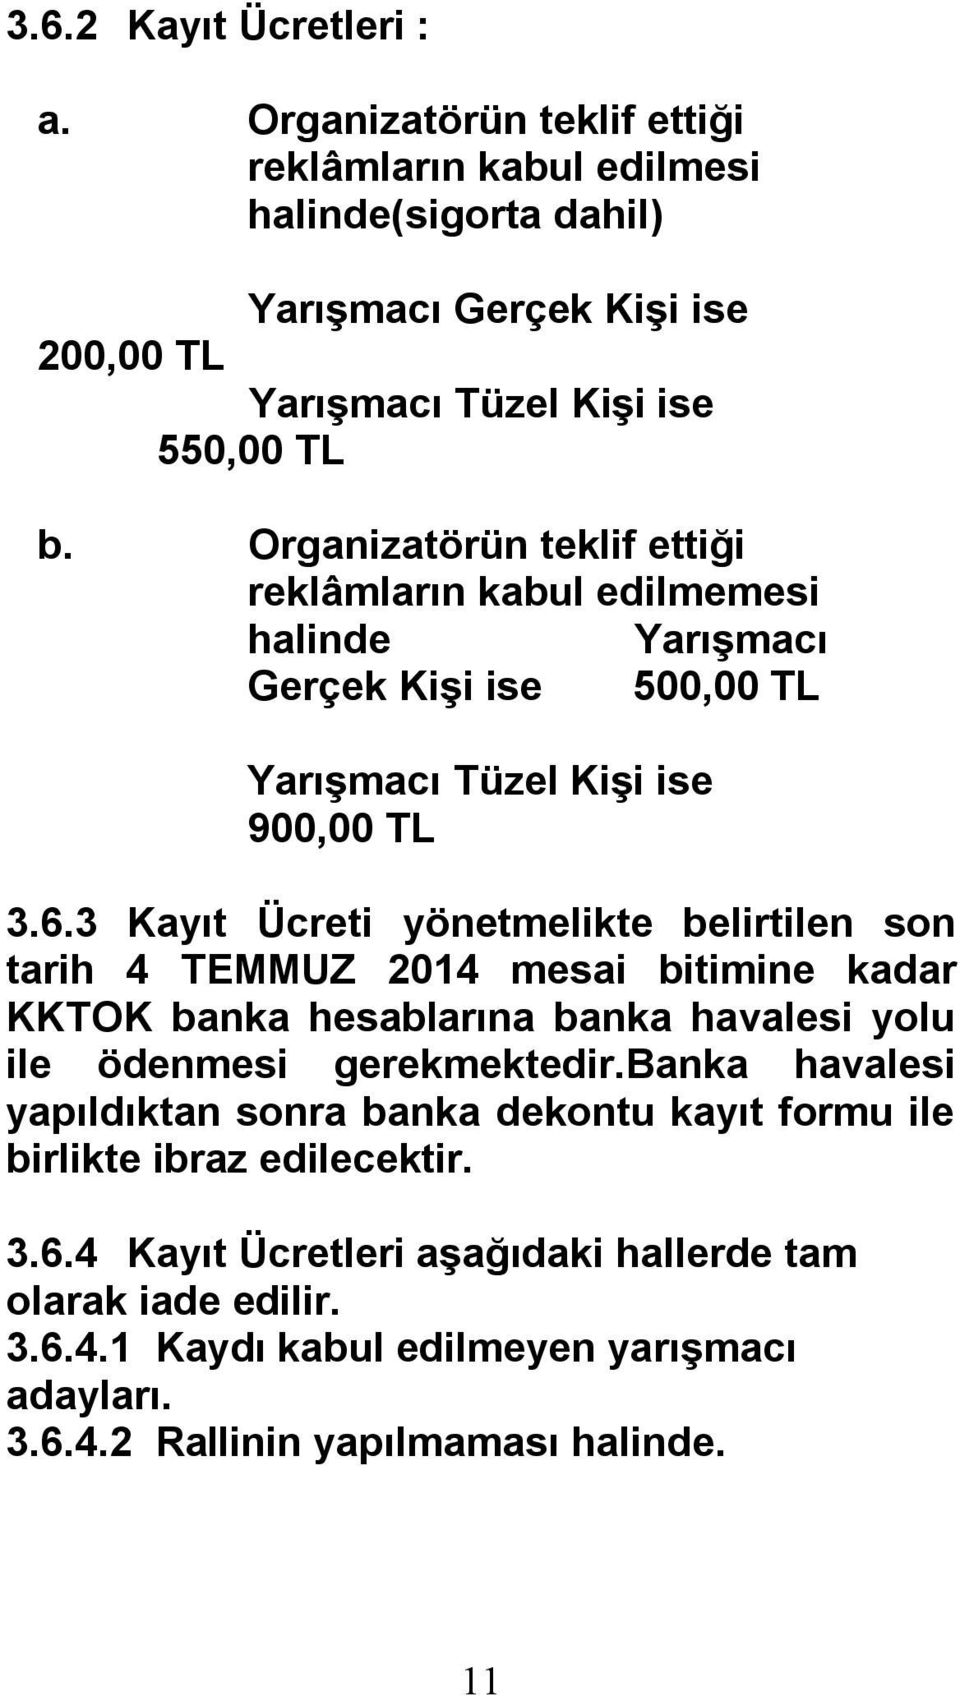 3 Kayıt Ücreti yönetmelikte belirtilen son tarih 4 TEMMUZ 2014 mesai bitimine kadar KKTOK banka hesablarına banka havalesi yolu ile ödenmesi gerekmektedir.